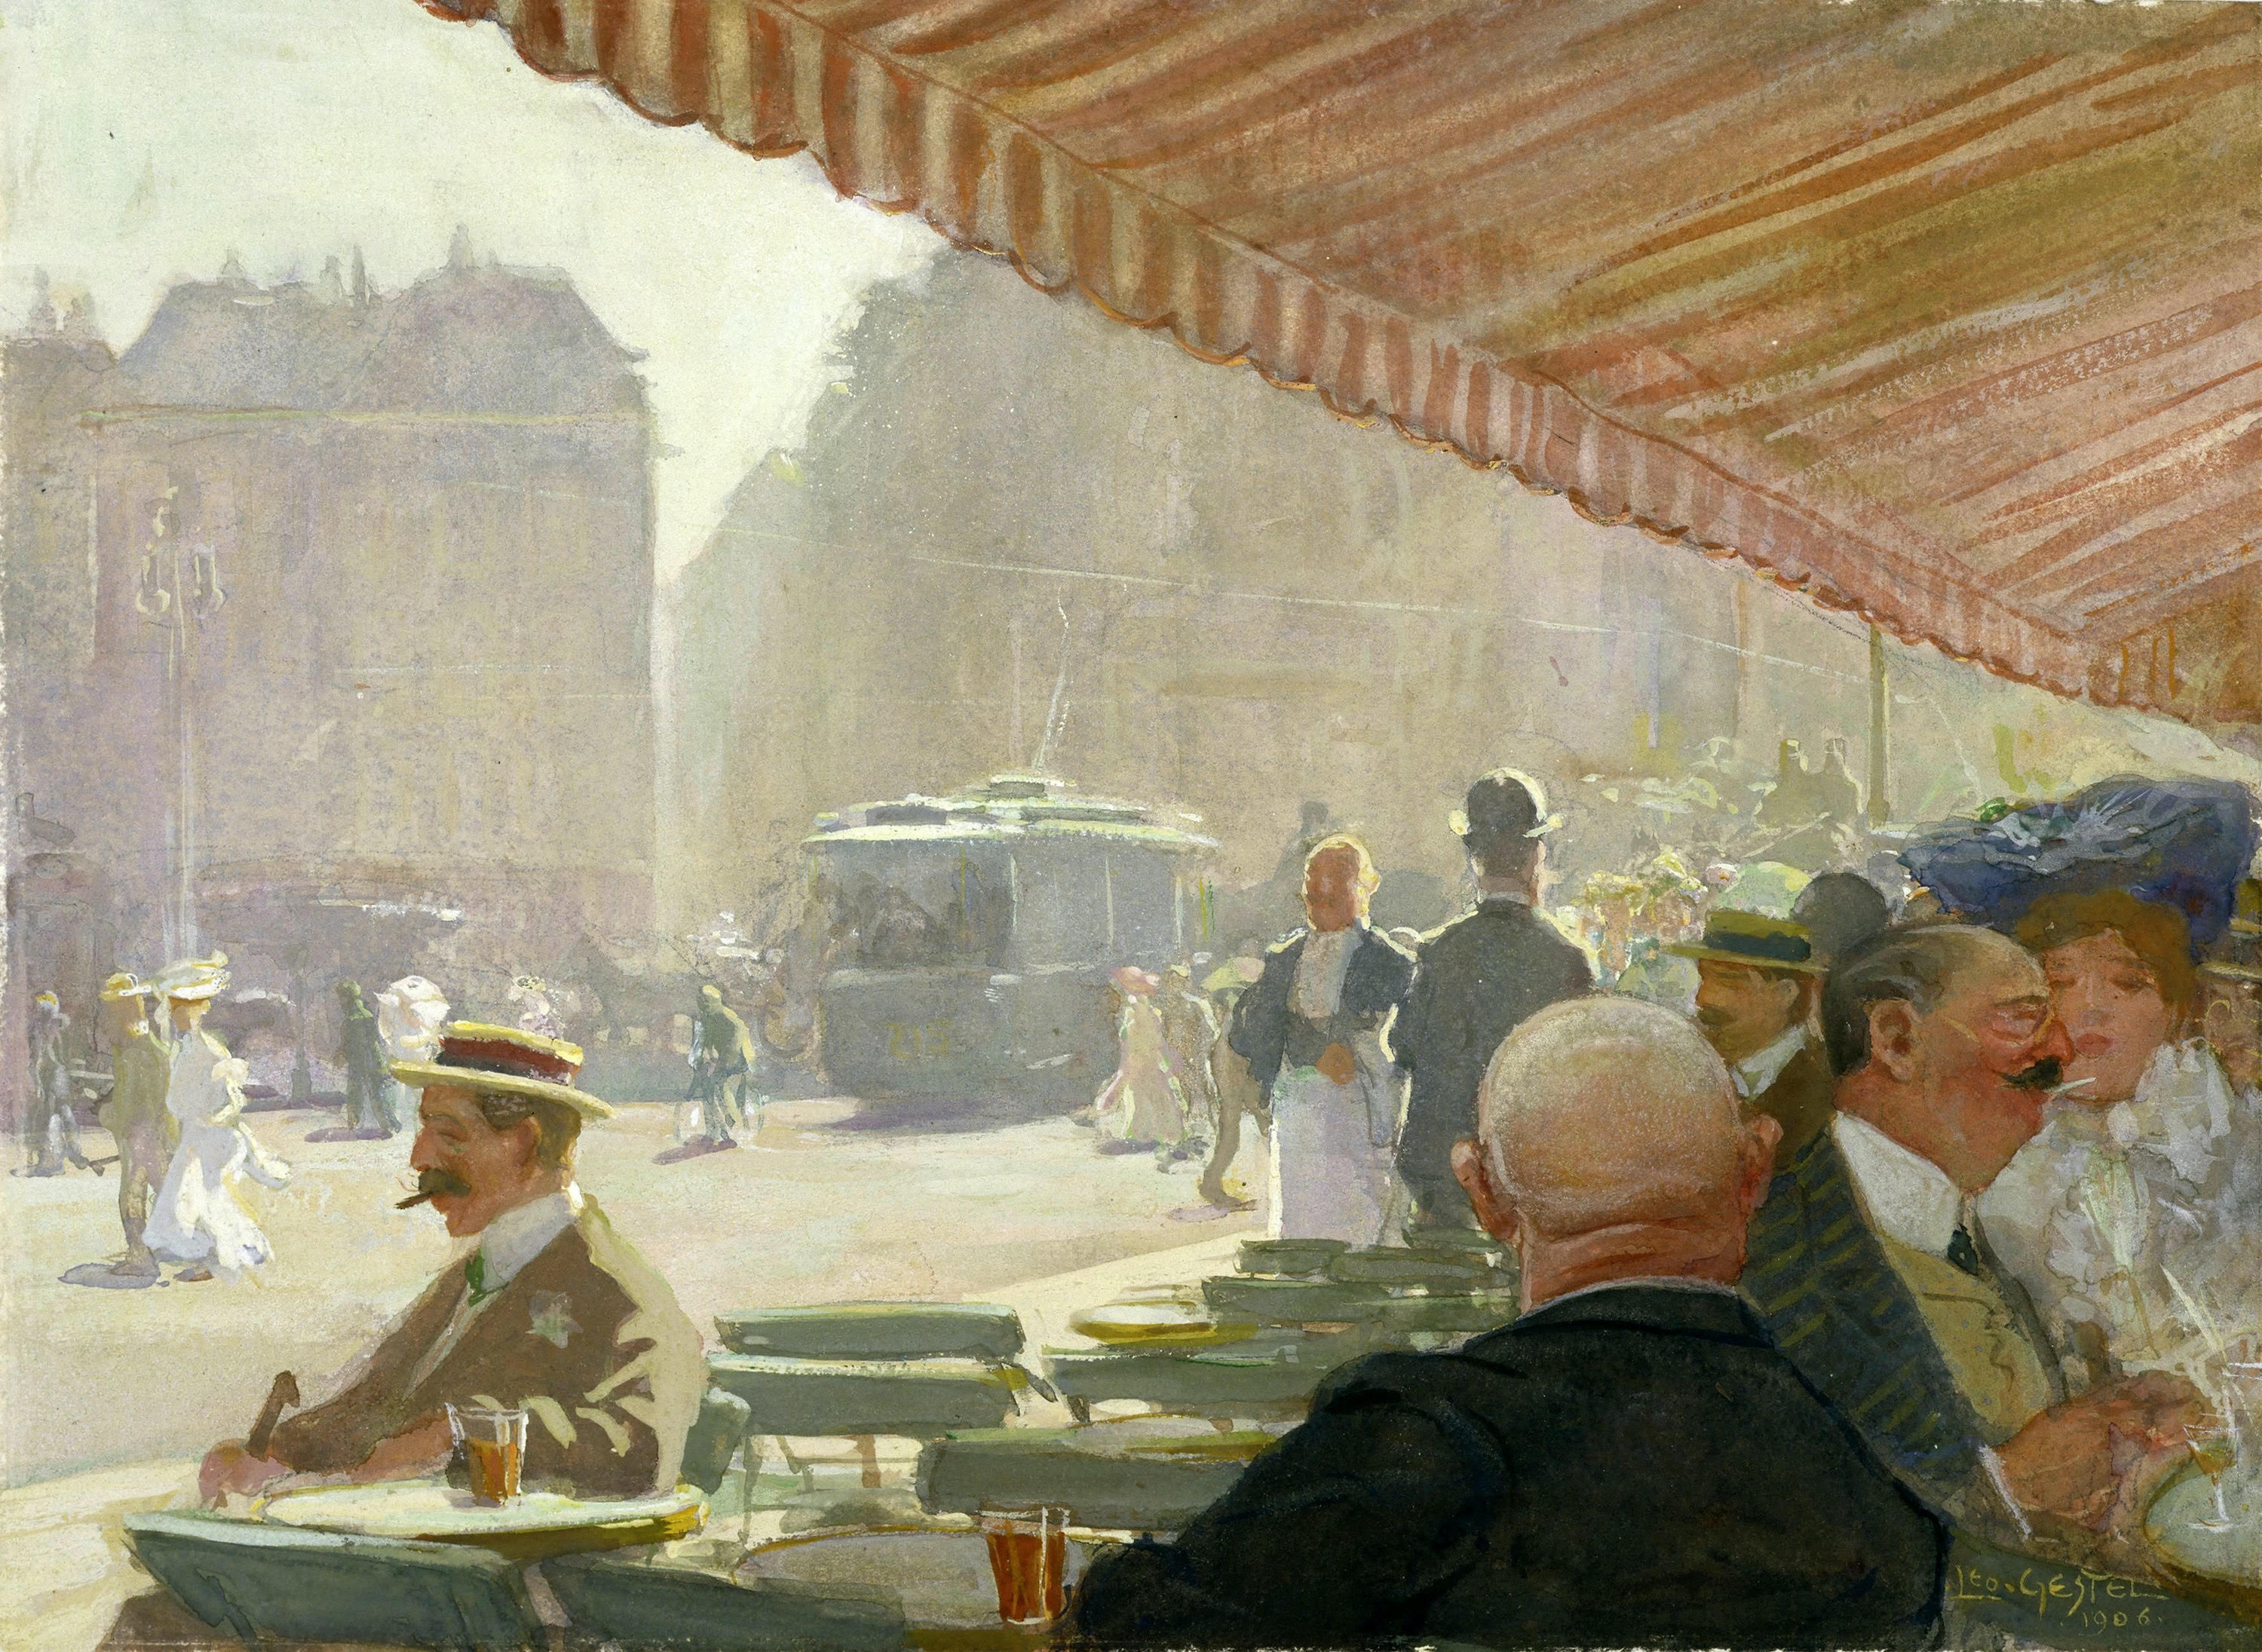 レンブラント広場のカフェテラス by Leo Gestel - 1906年 - 32 x 47 cm 